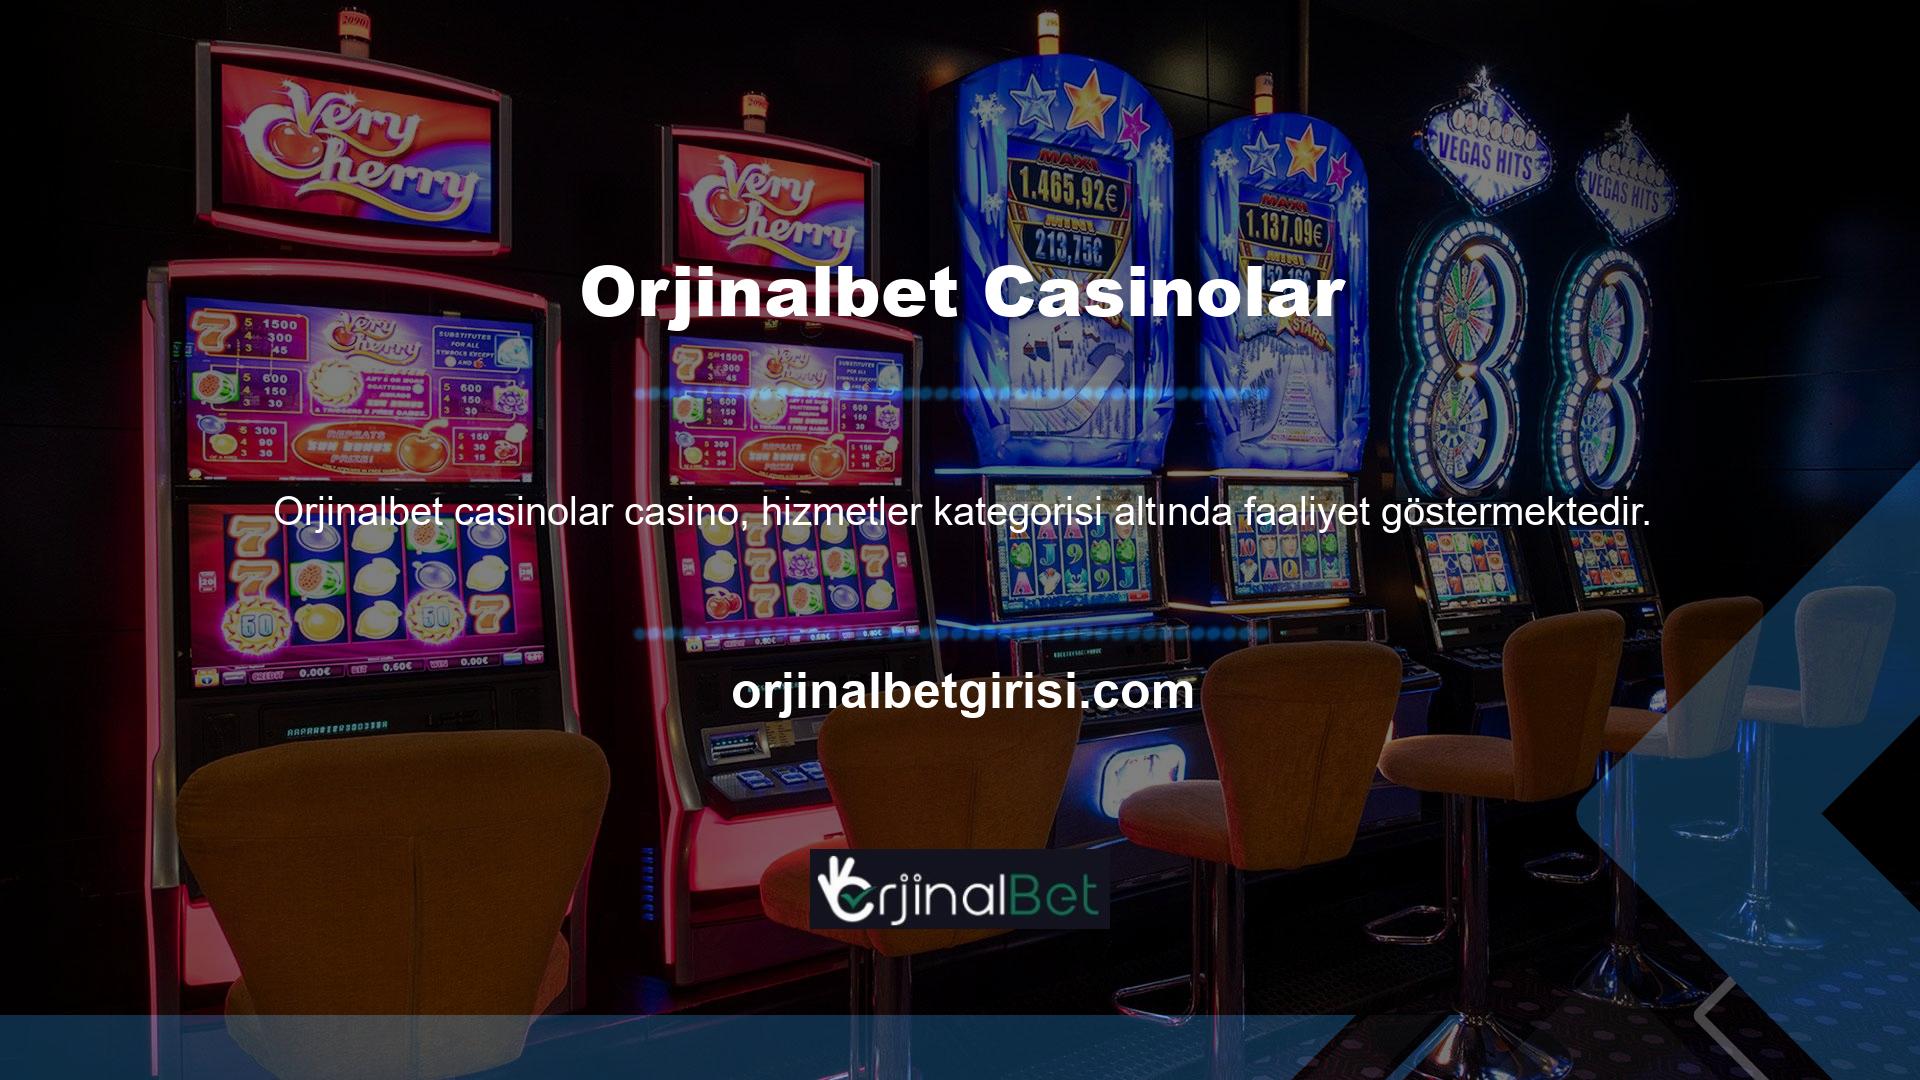 Bu kategorilerdeki tüm oyunlar, resmi profesyonel casino oyun sağlayıcıları tarafından sunulur ve günün 24 saati kullanılabilir